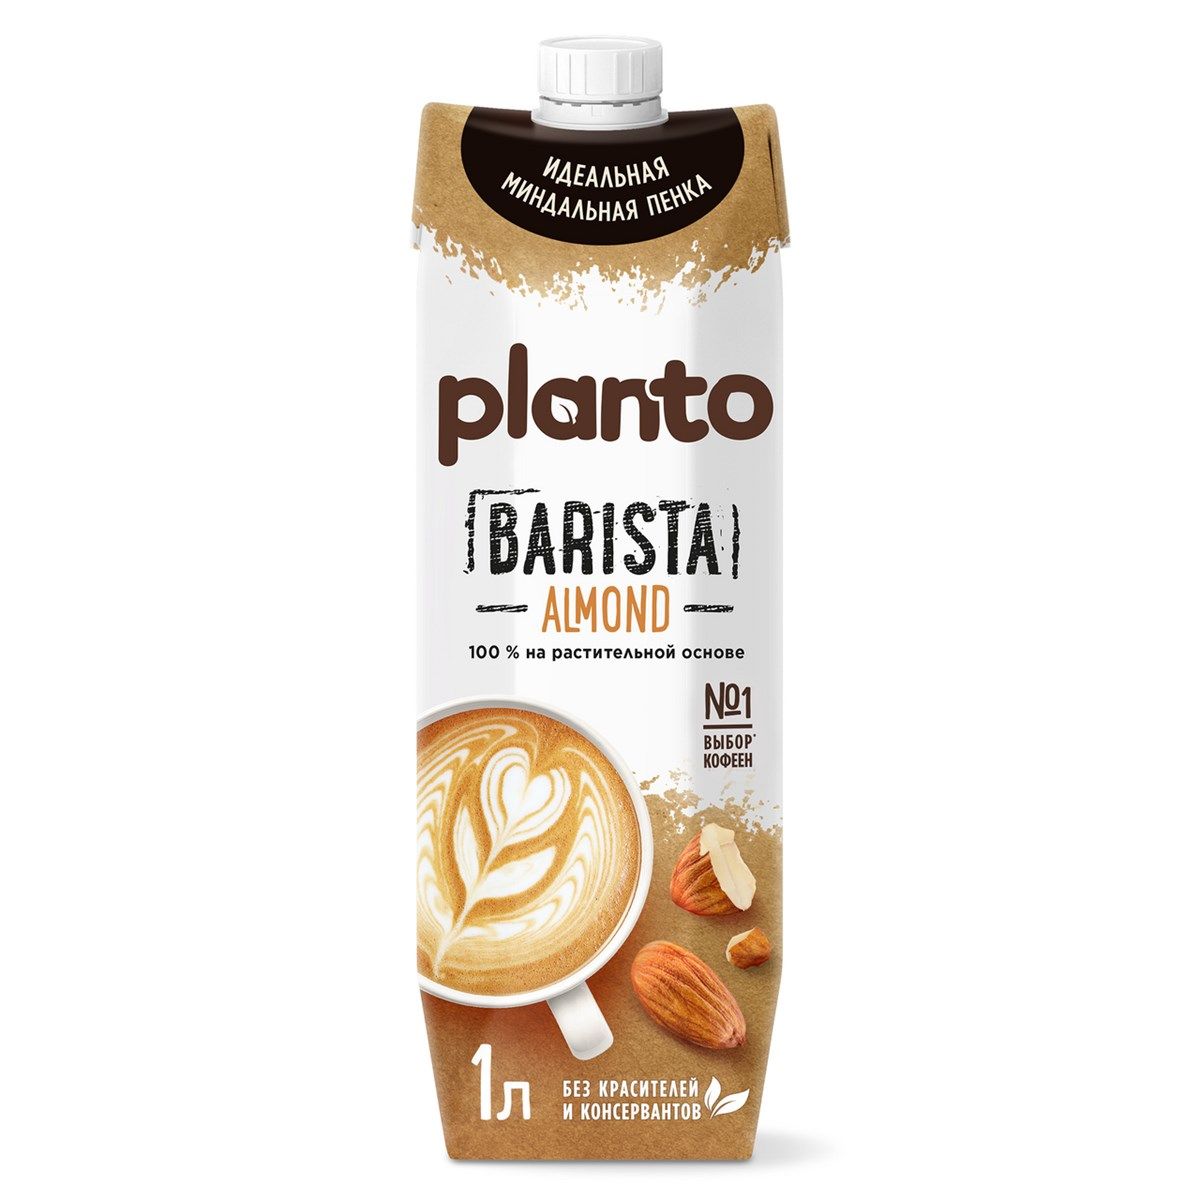 PLANTO Barista Almond (Миндаль) TetraPak 1л Растительное молоко